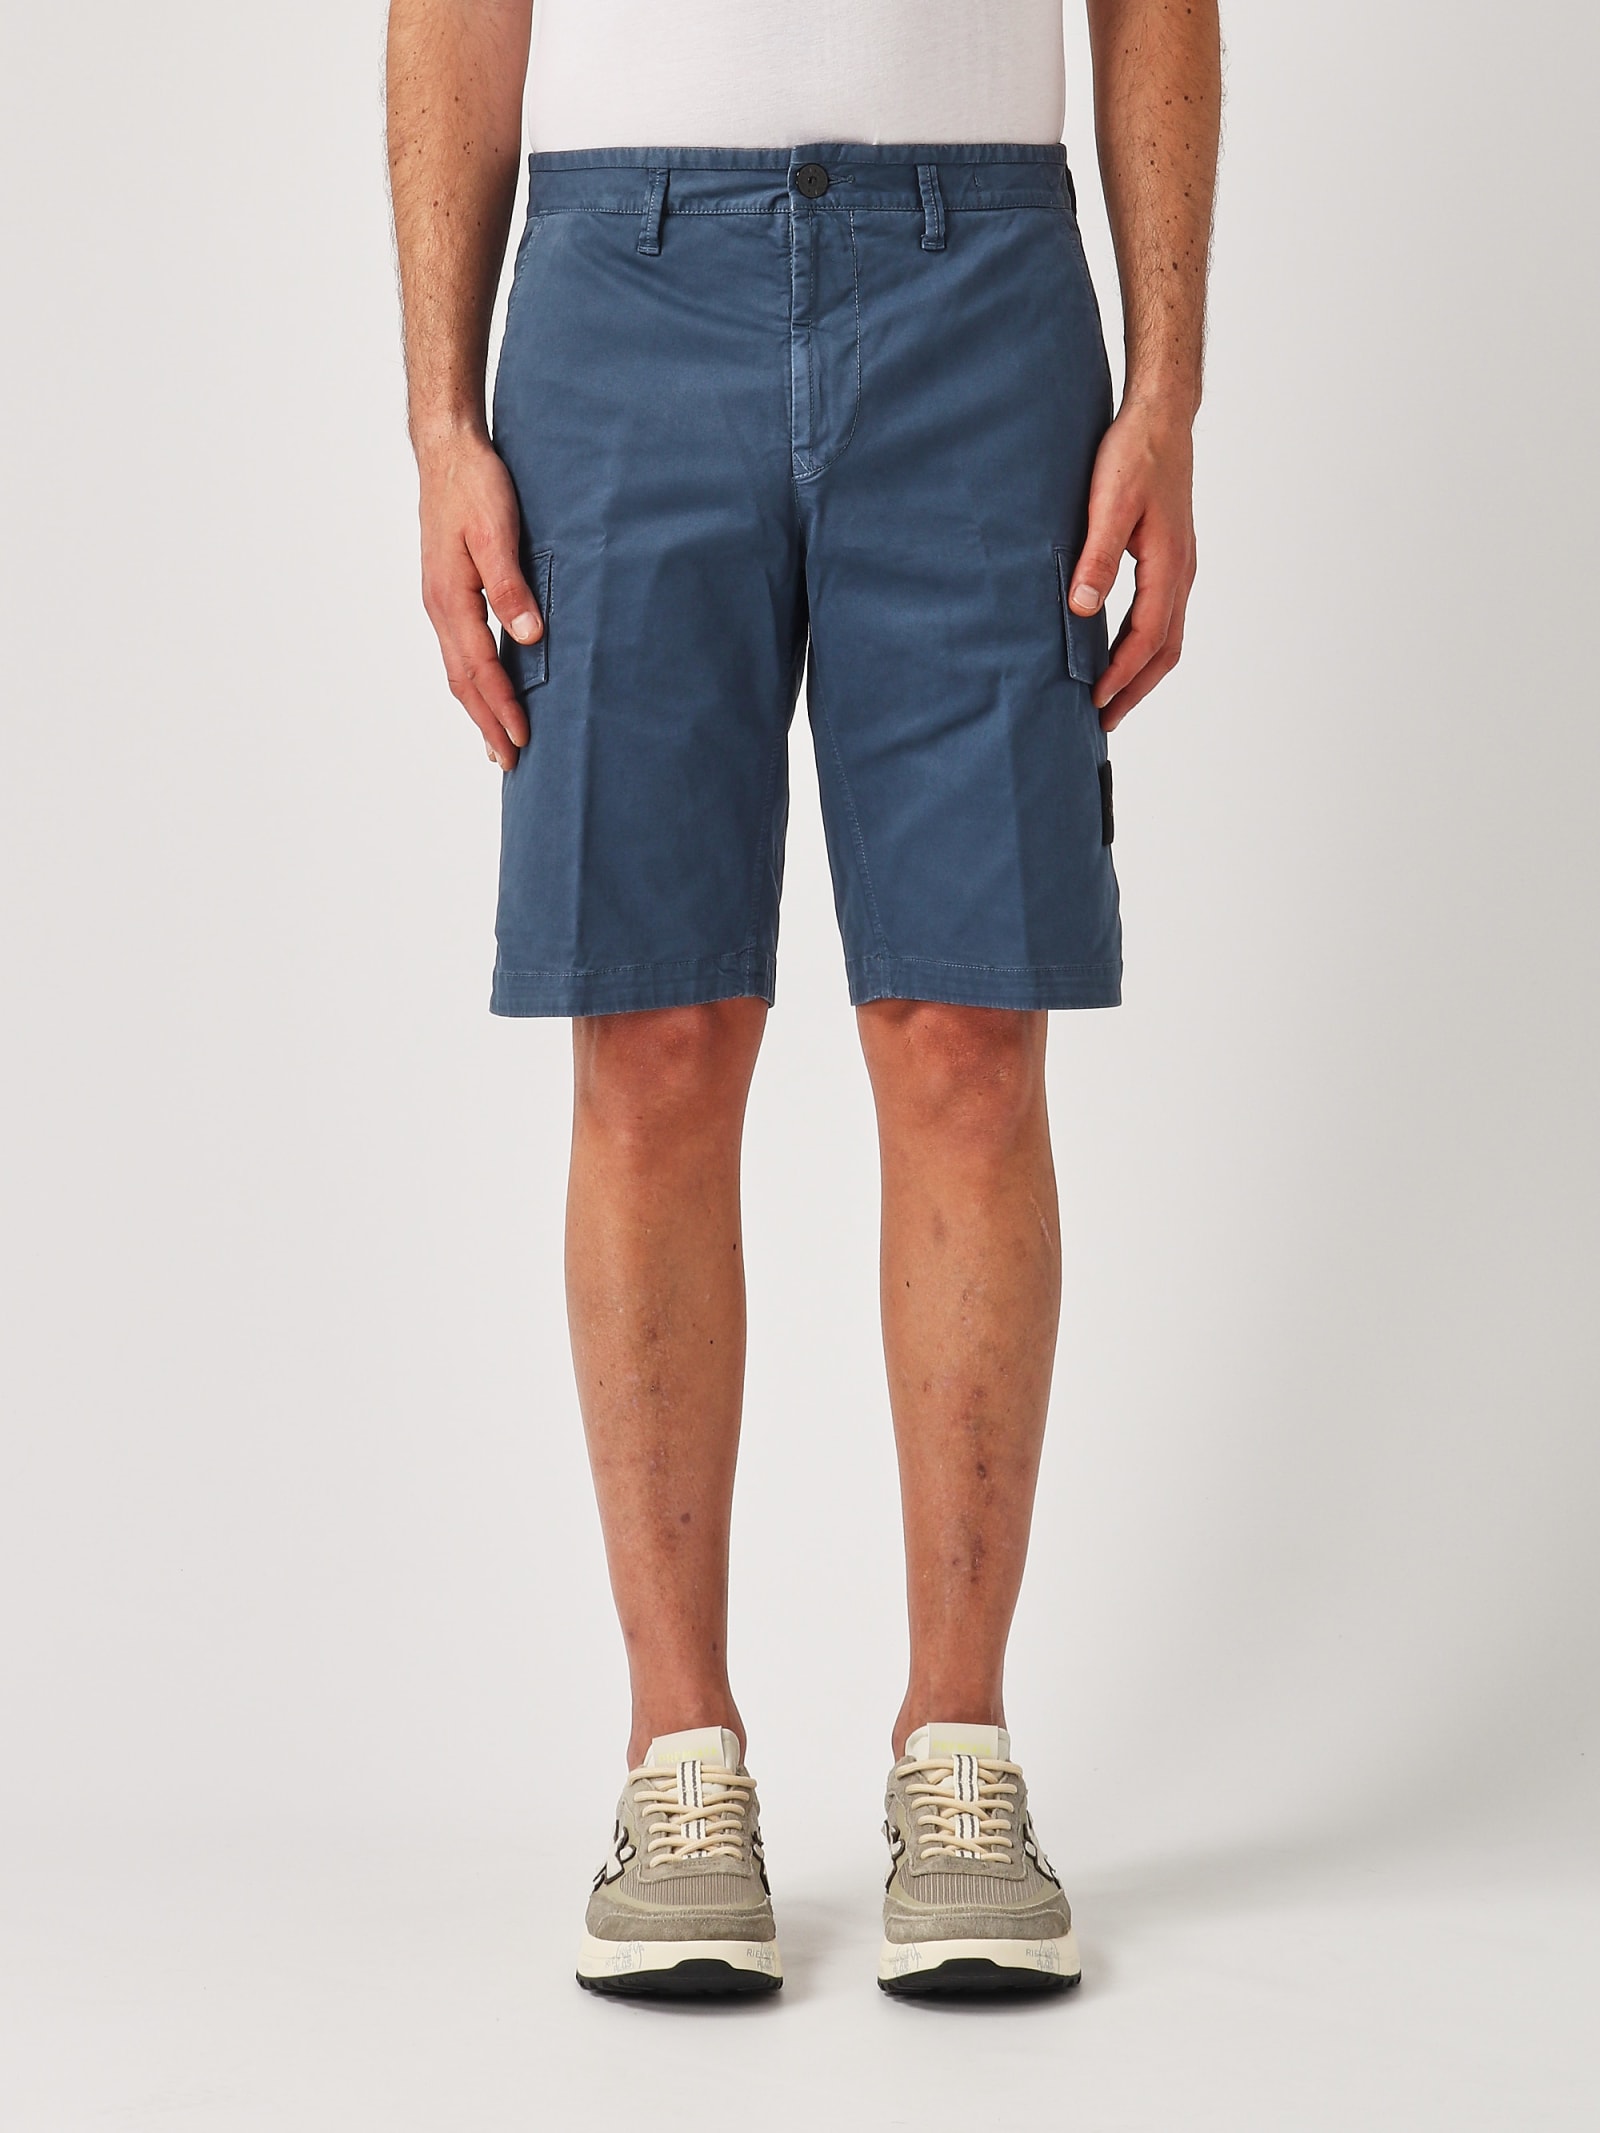 Bermuda Slim Shorts